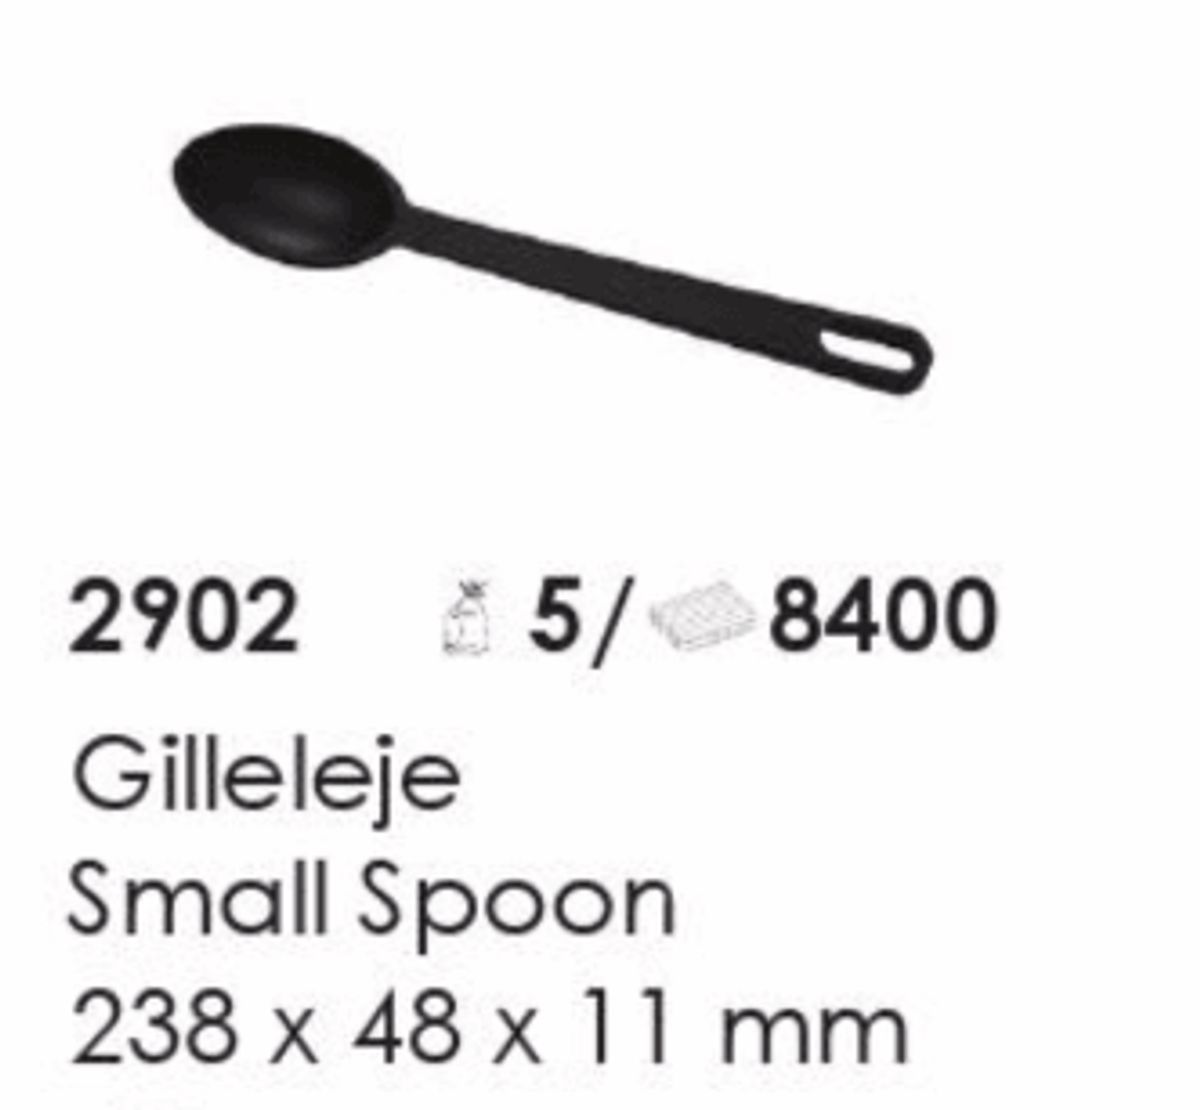 Gilleleje Small Spoon, artikel nr. 2902 (Lille ske) Foto: Screenshot fra katalog fra Plast Team A/S.